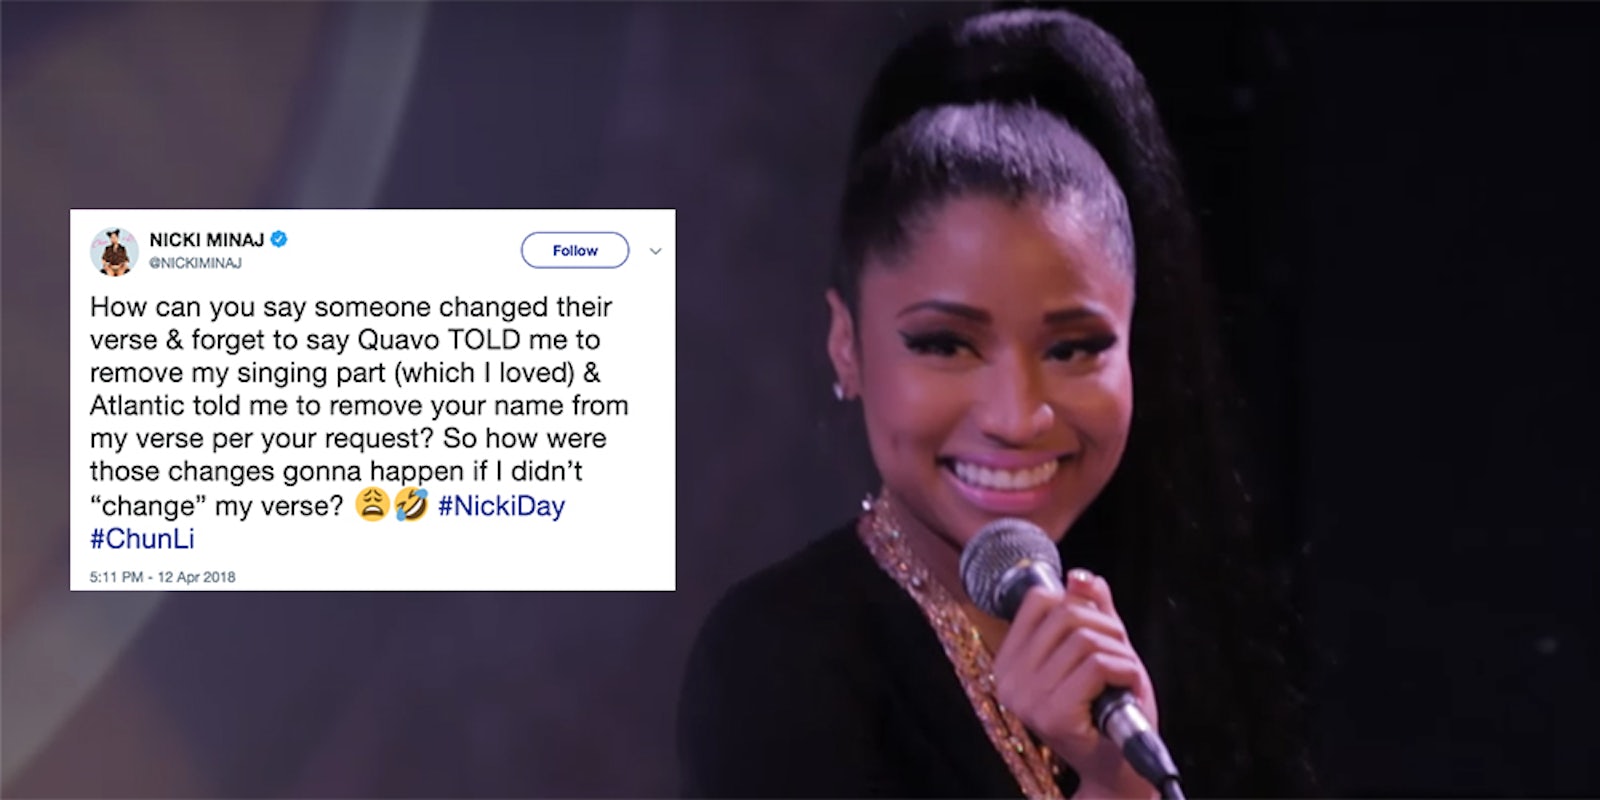 Nicki Minaj addressed her controversy with Cardi B on #NickiDay.